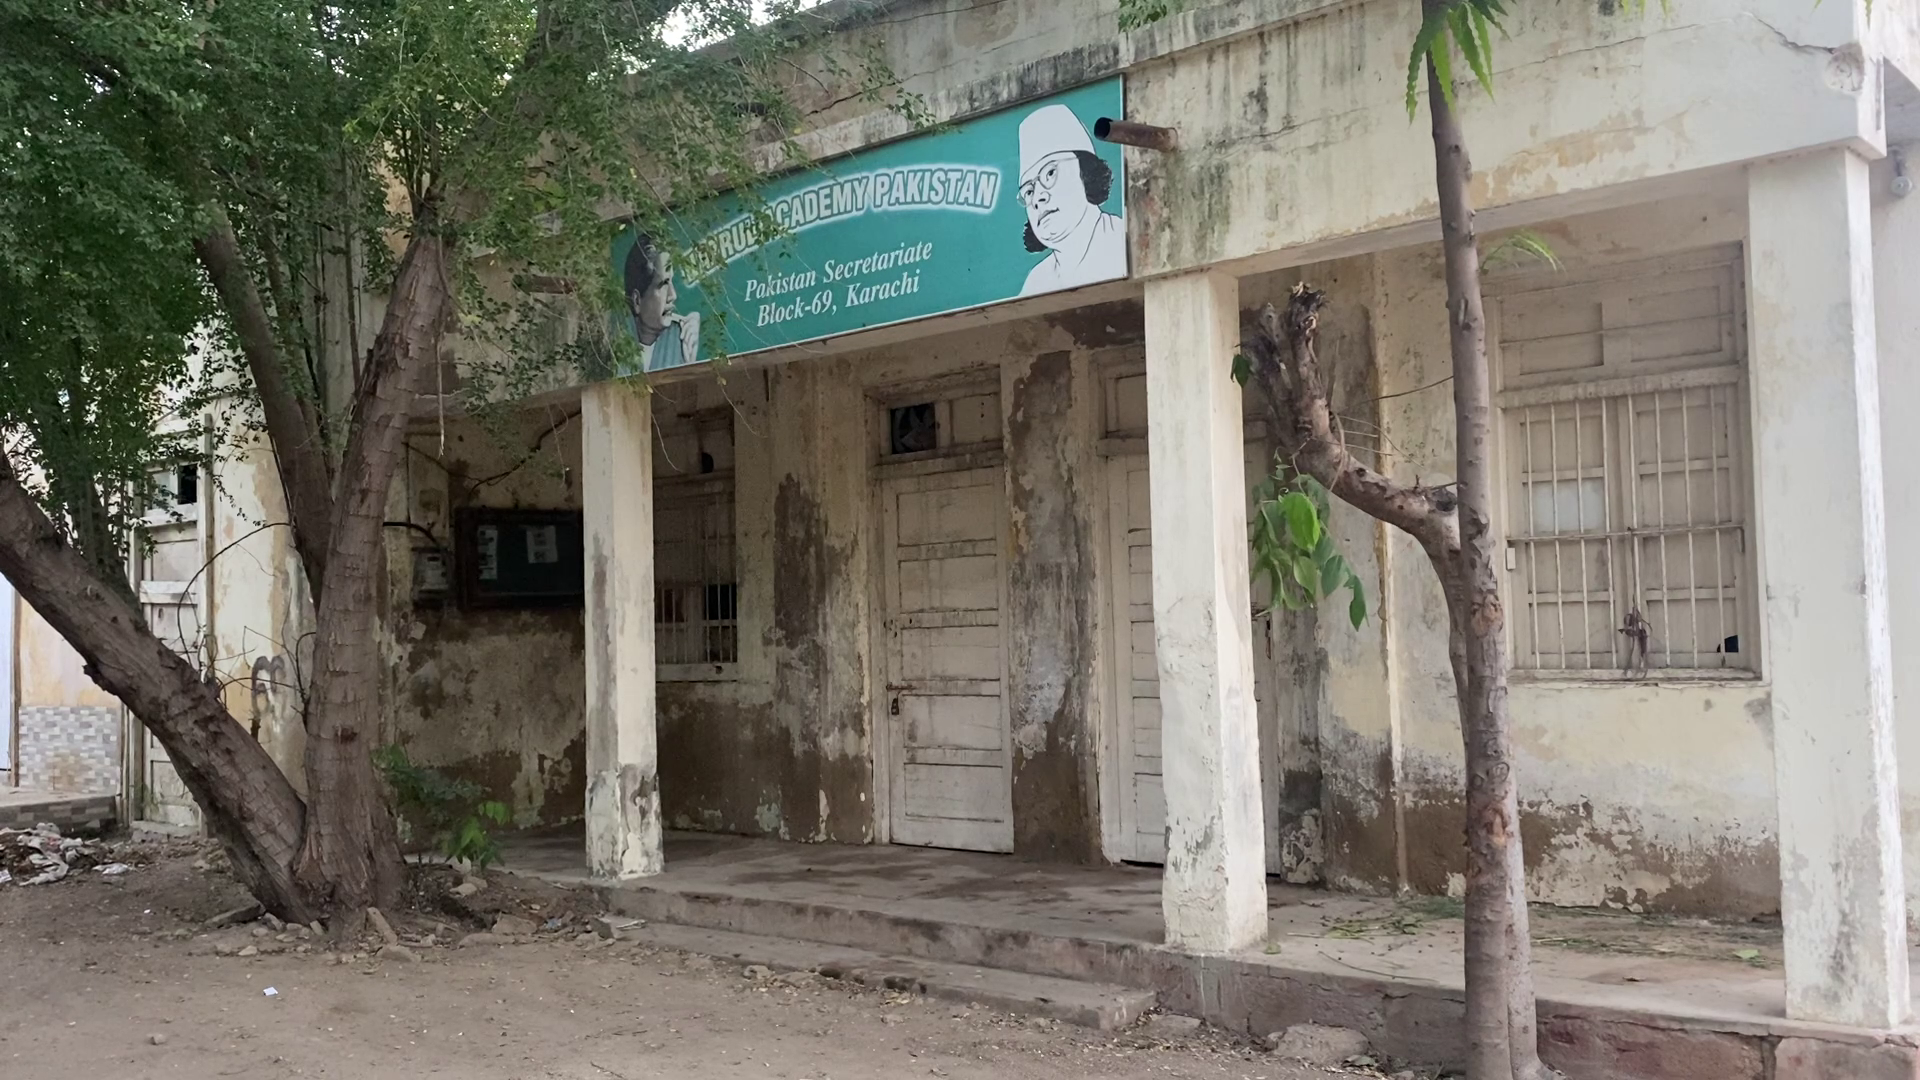 Nazrul Academy facade in Pakistan Secretariate, Karachi